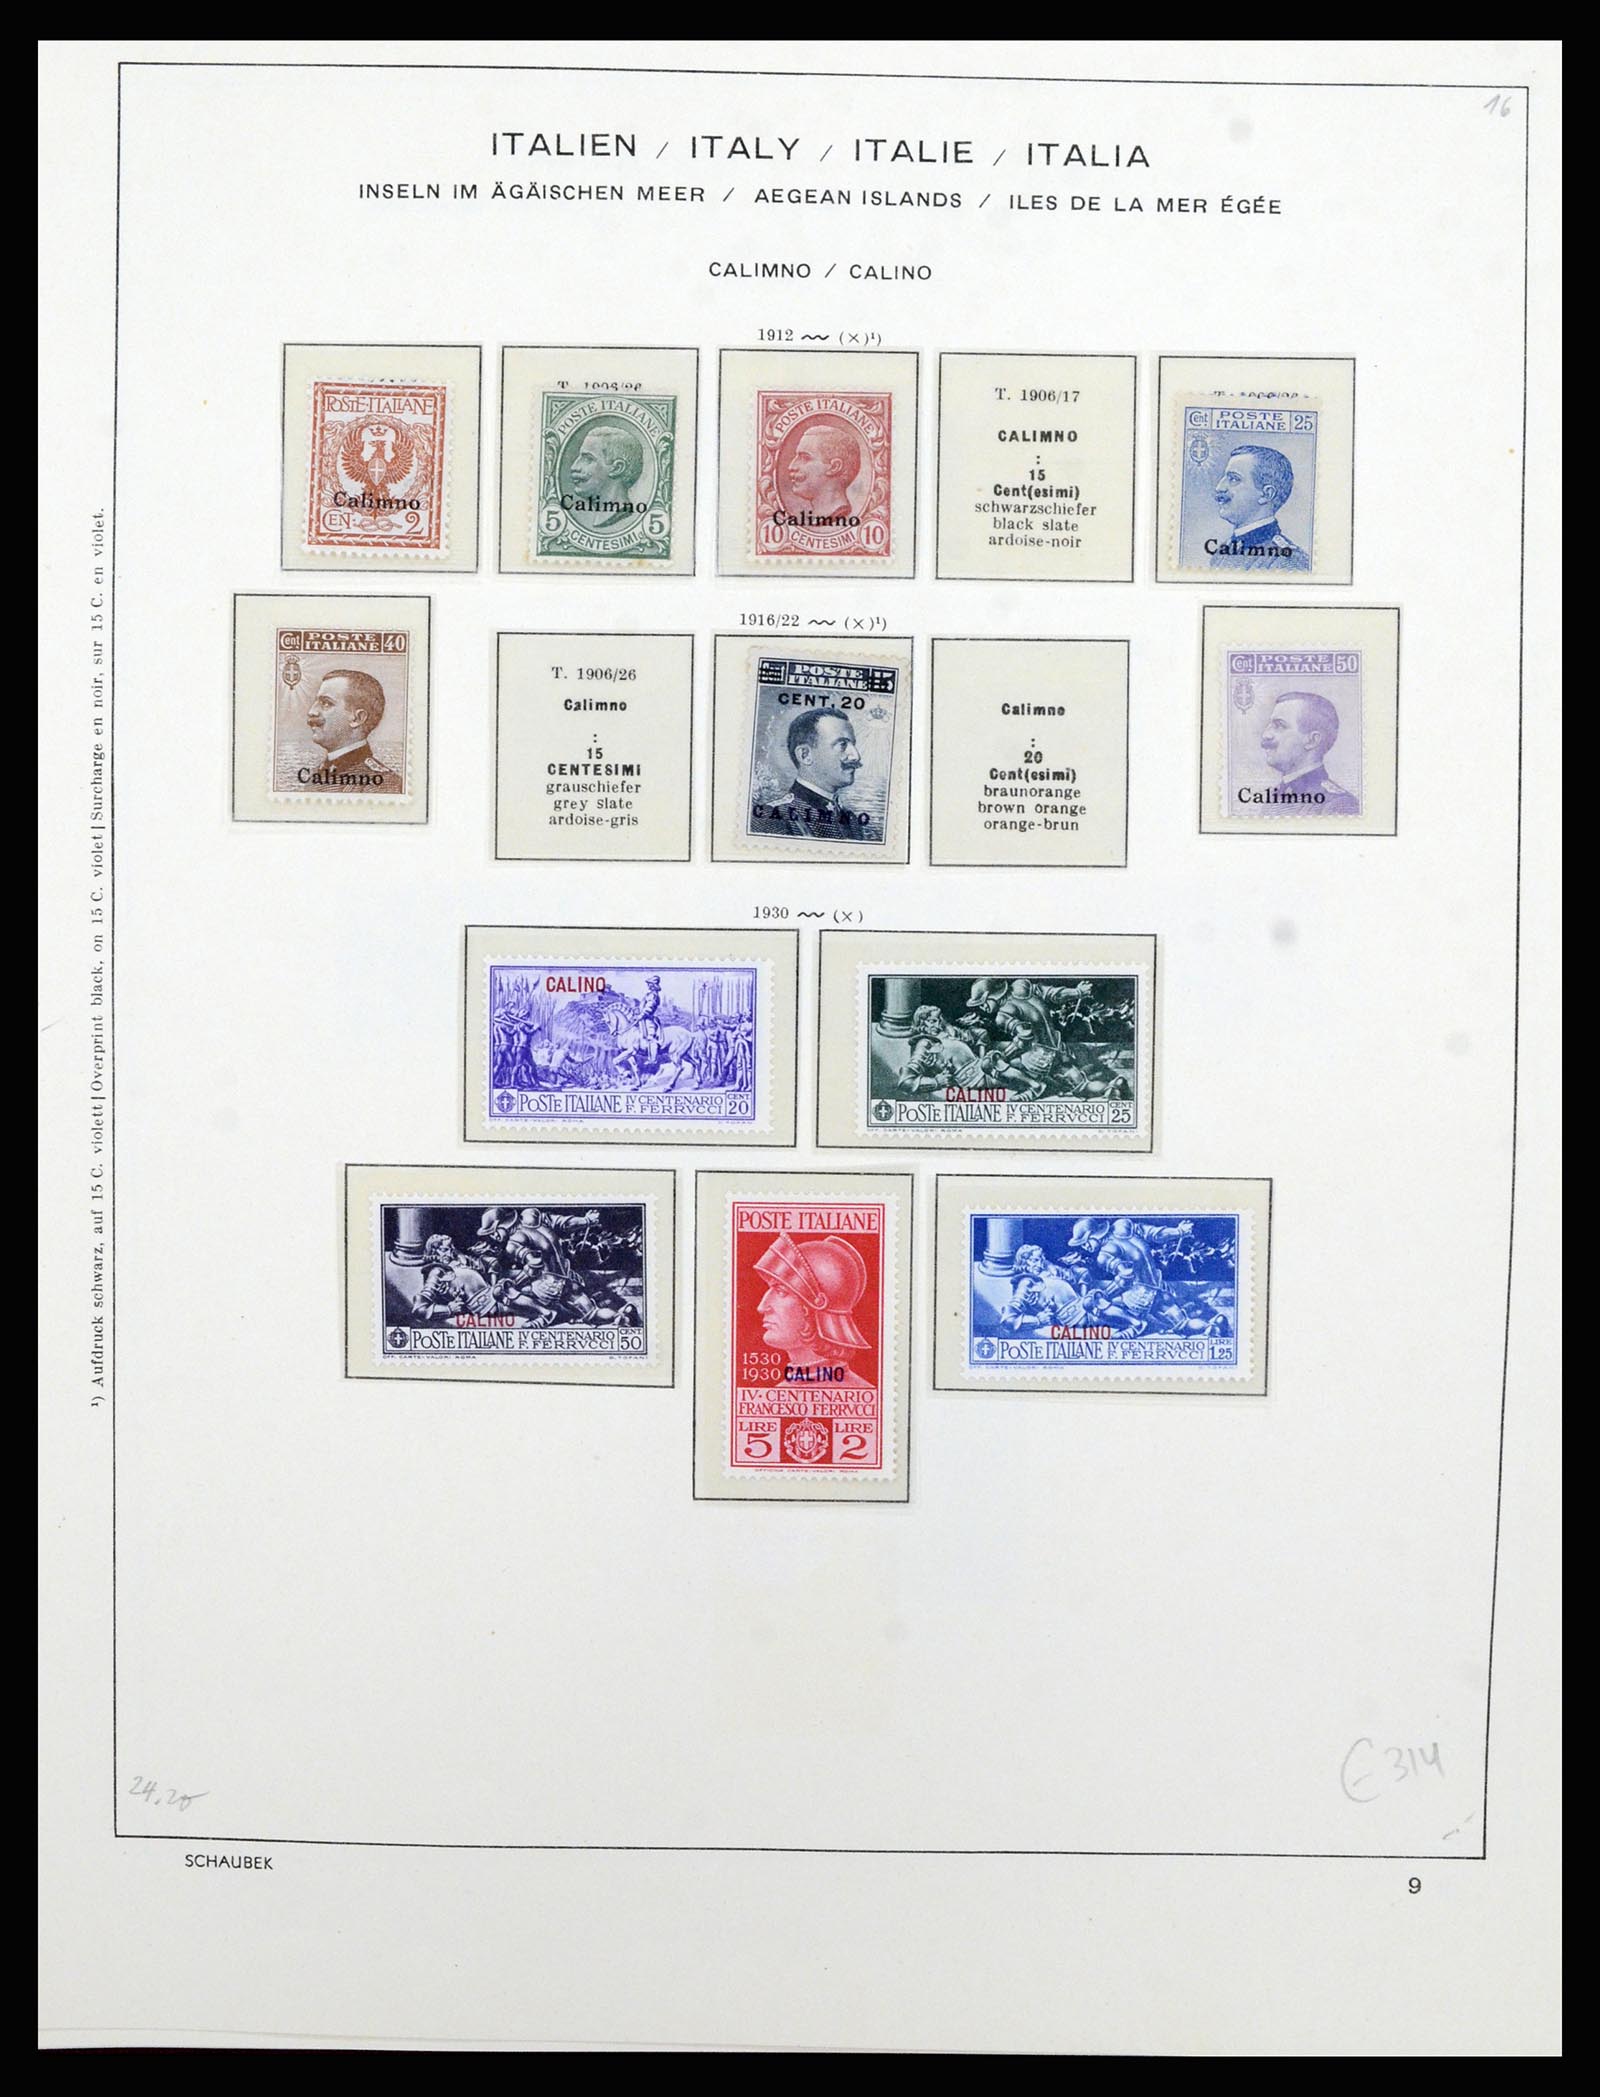 36577 035 - Stamp collection 36577 Italiaanse gebieden 1870-1940.